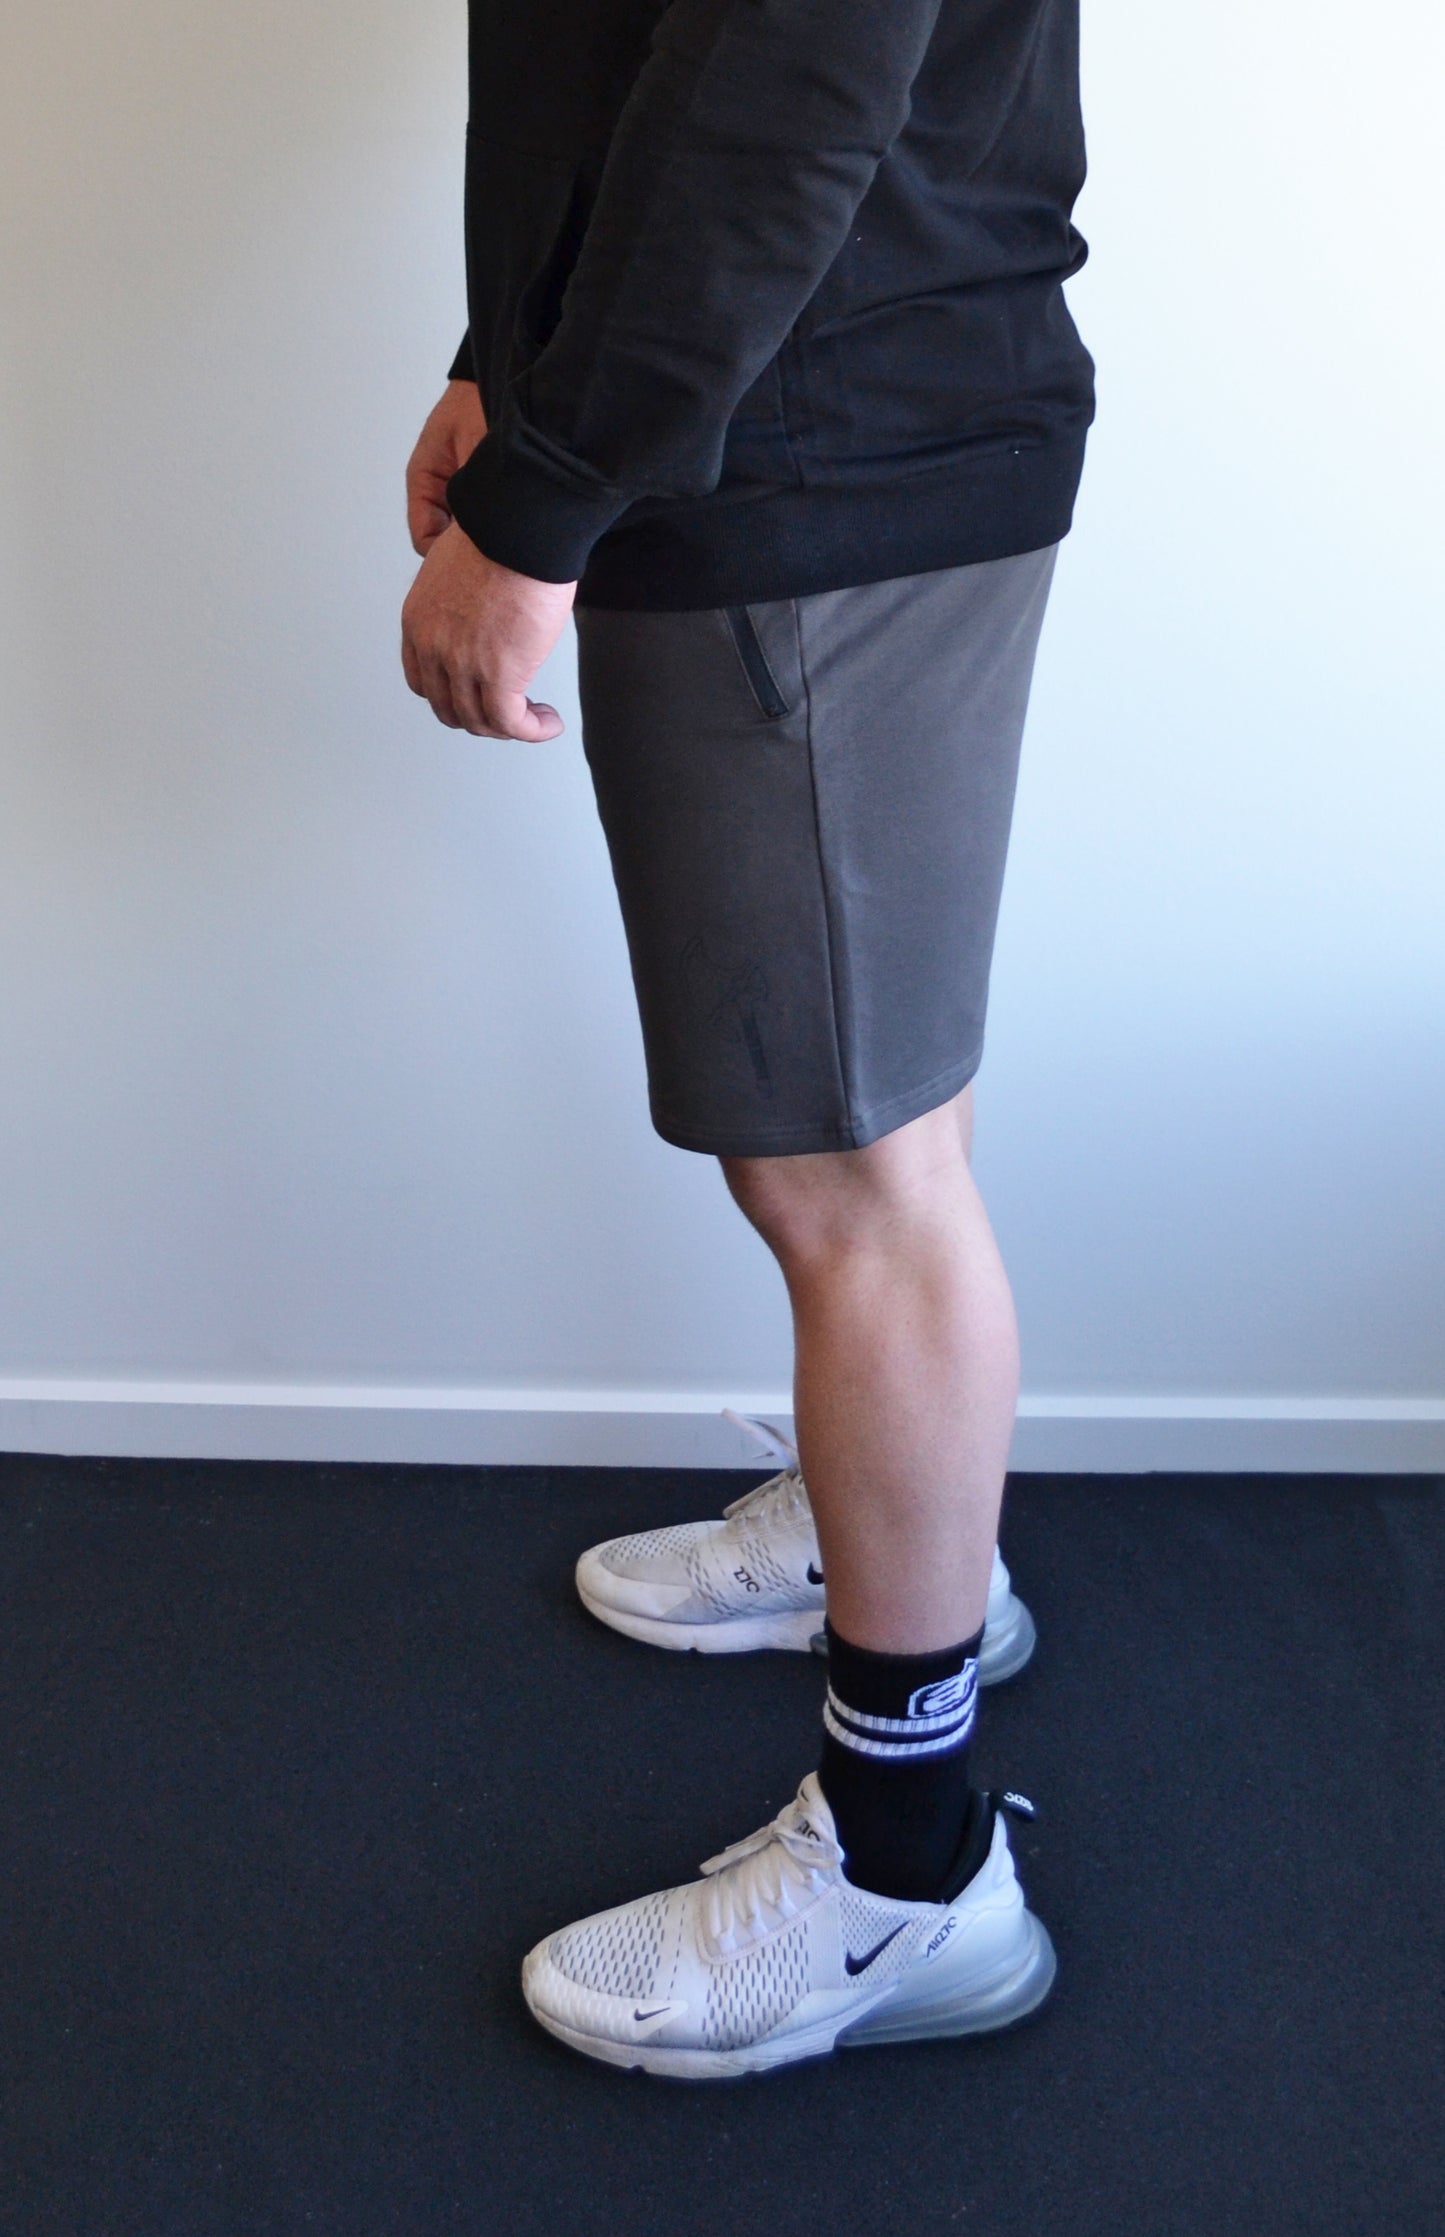 Grey Training Shorts